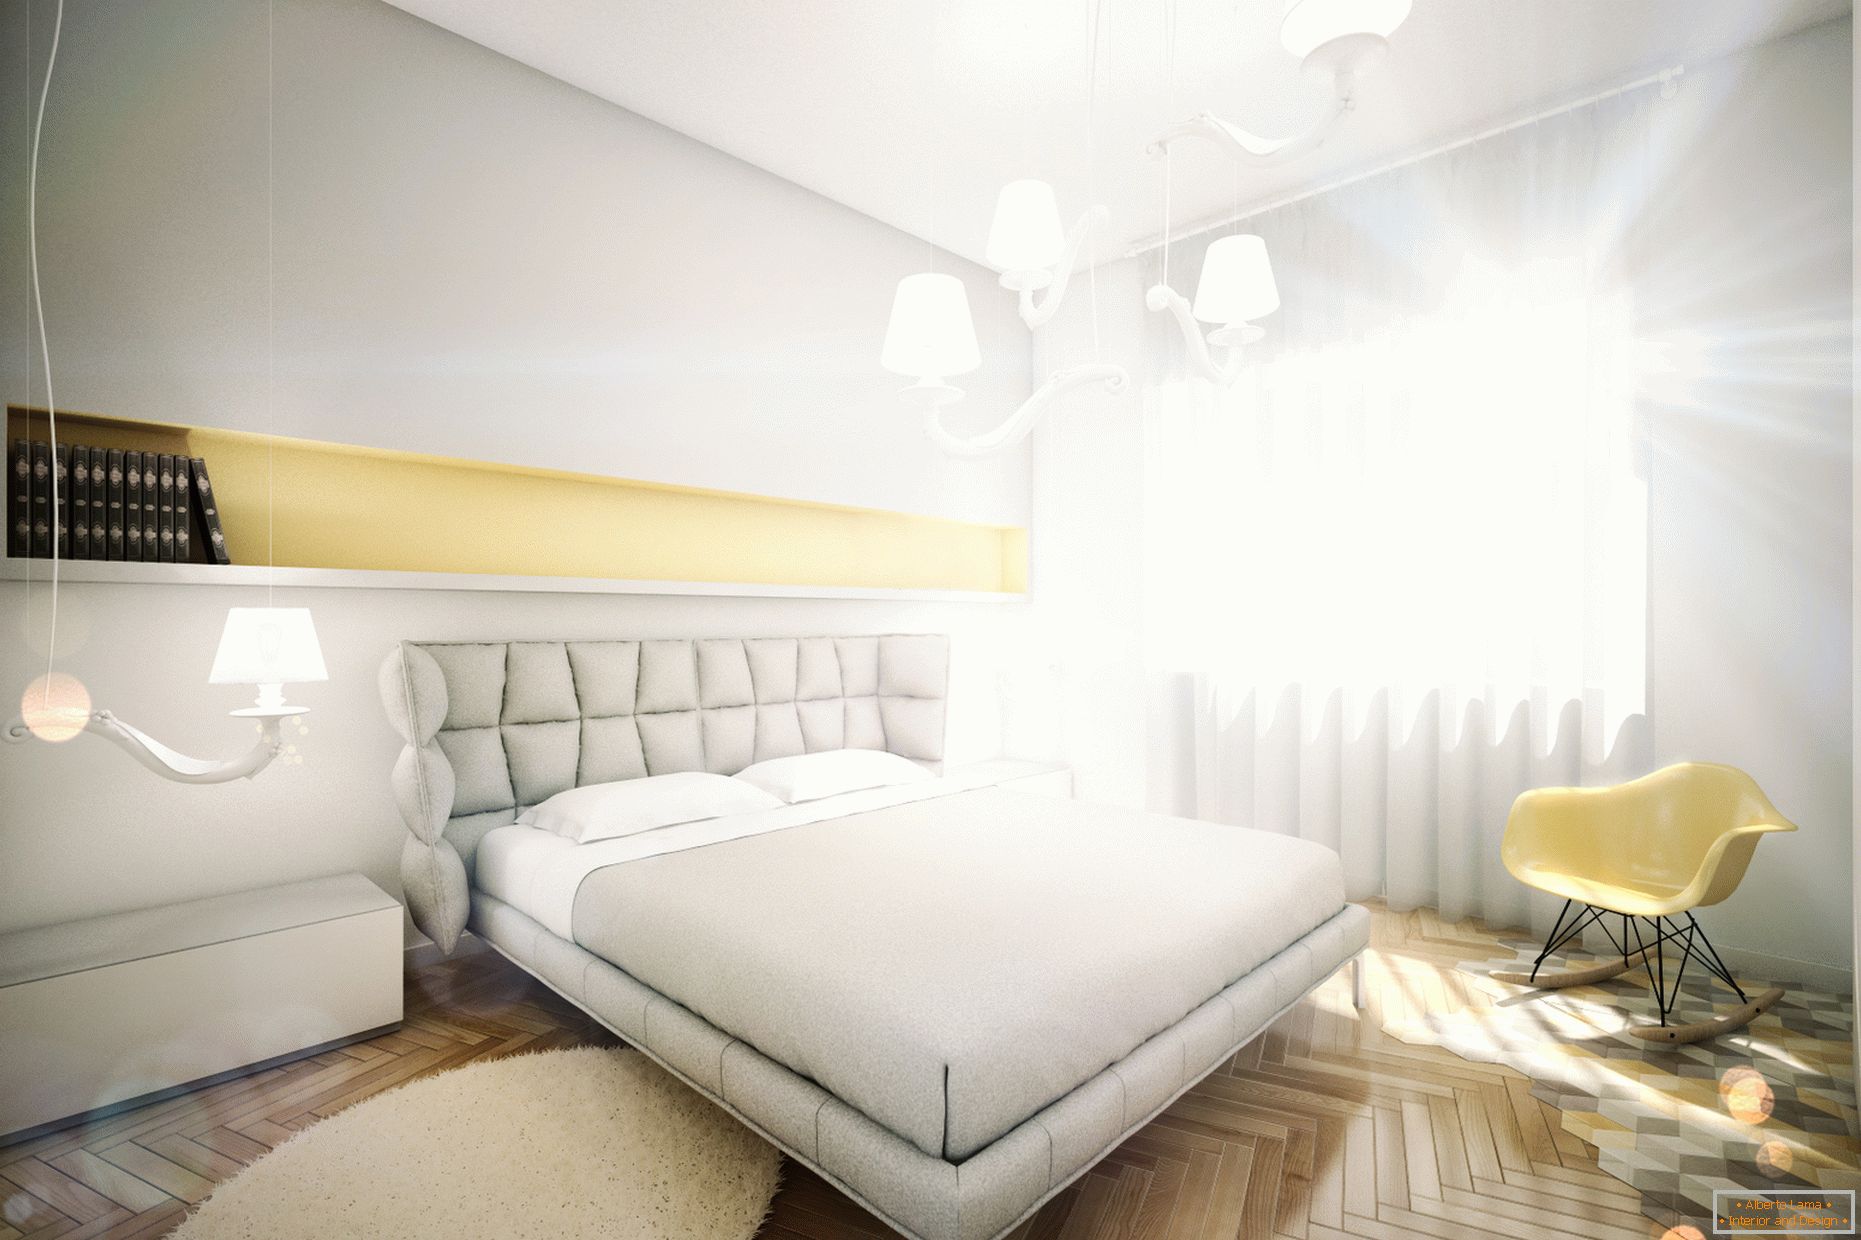 Apartament de design în culori pastelate: dormitor